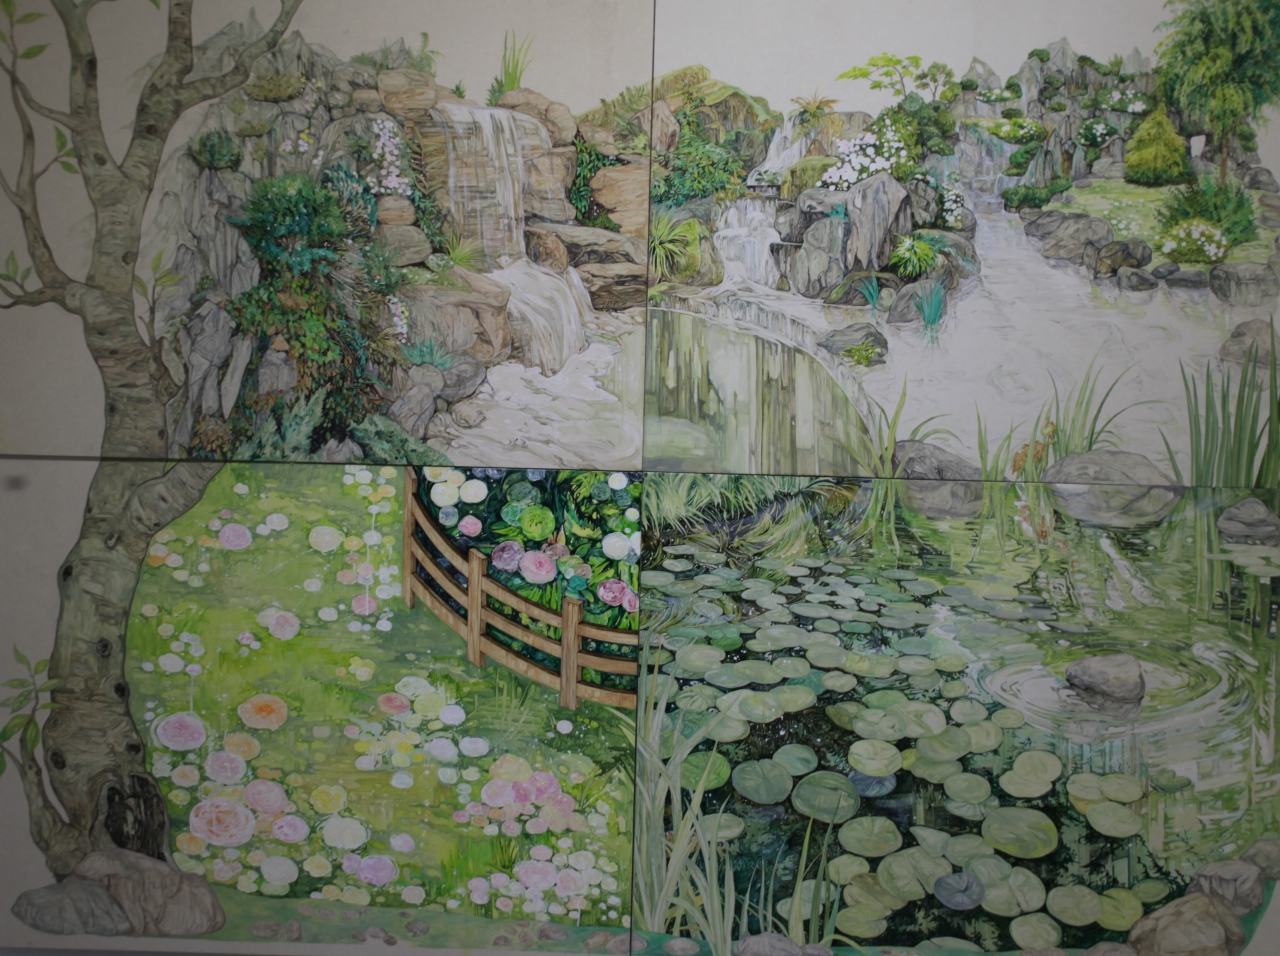 정재원, 유원(留園, Lingering Garden), 2021, mixed media on paper, 182x233.6cm